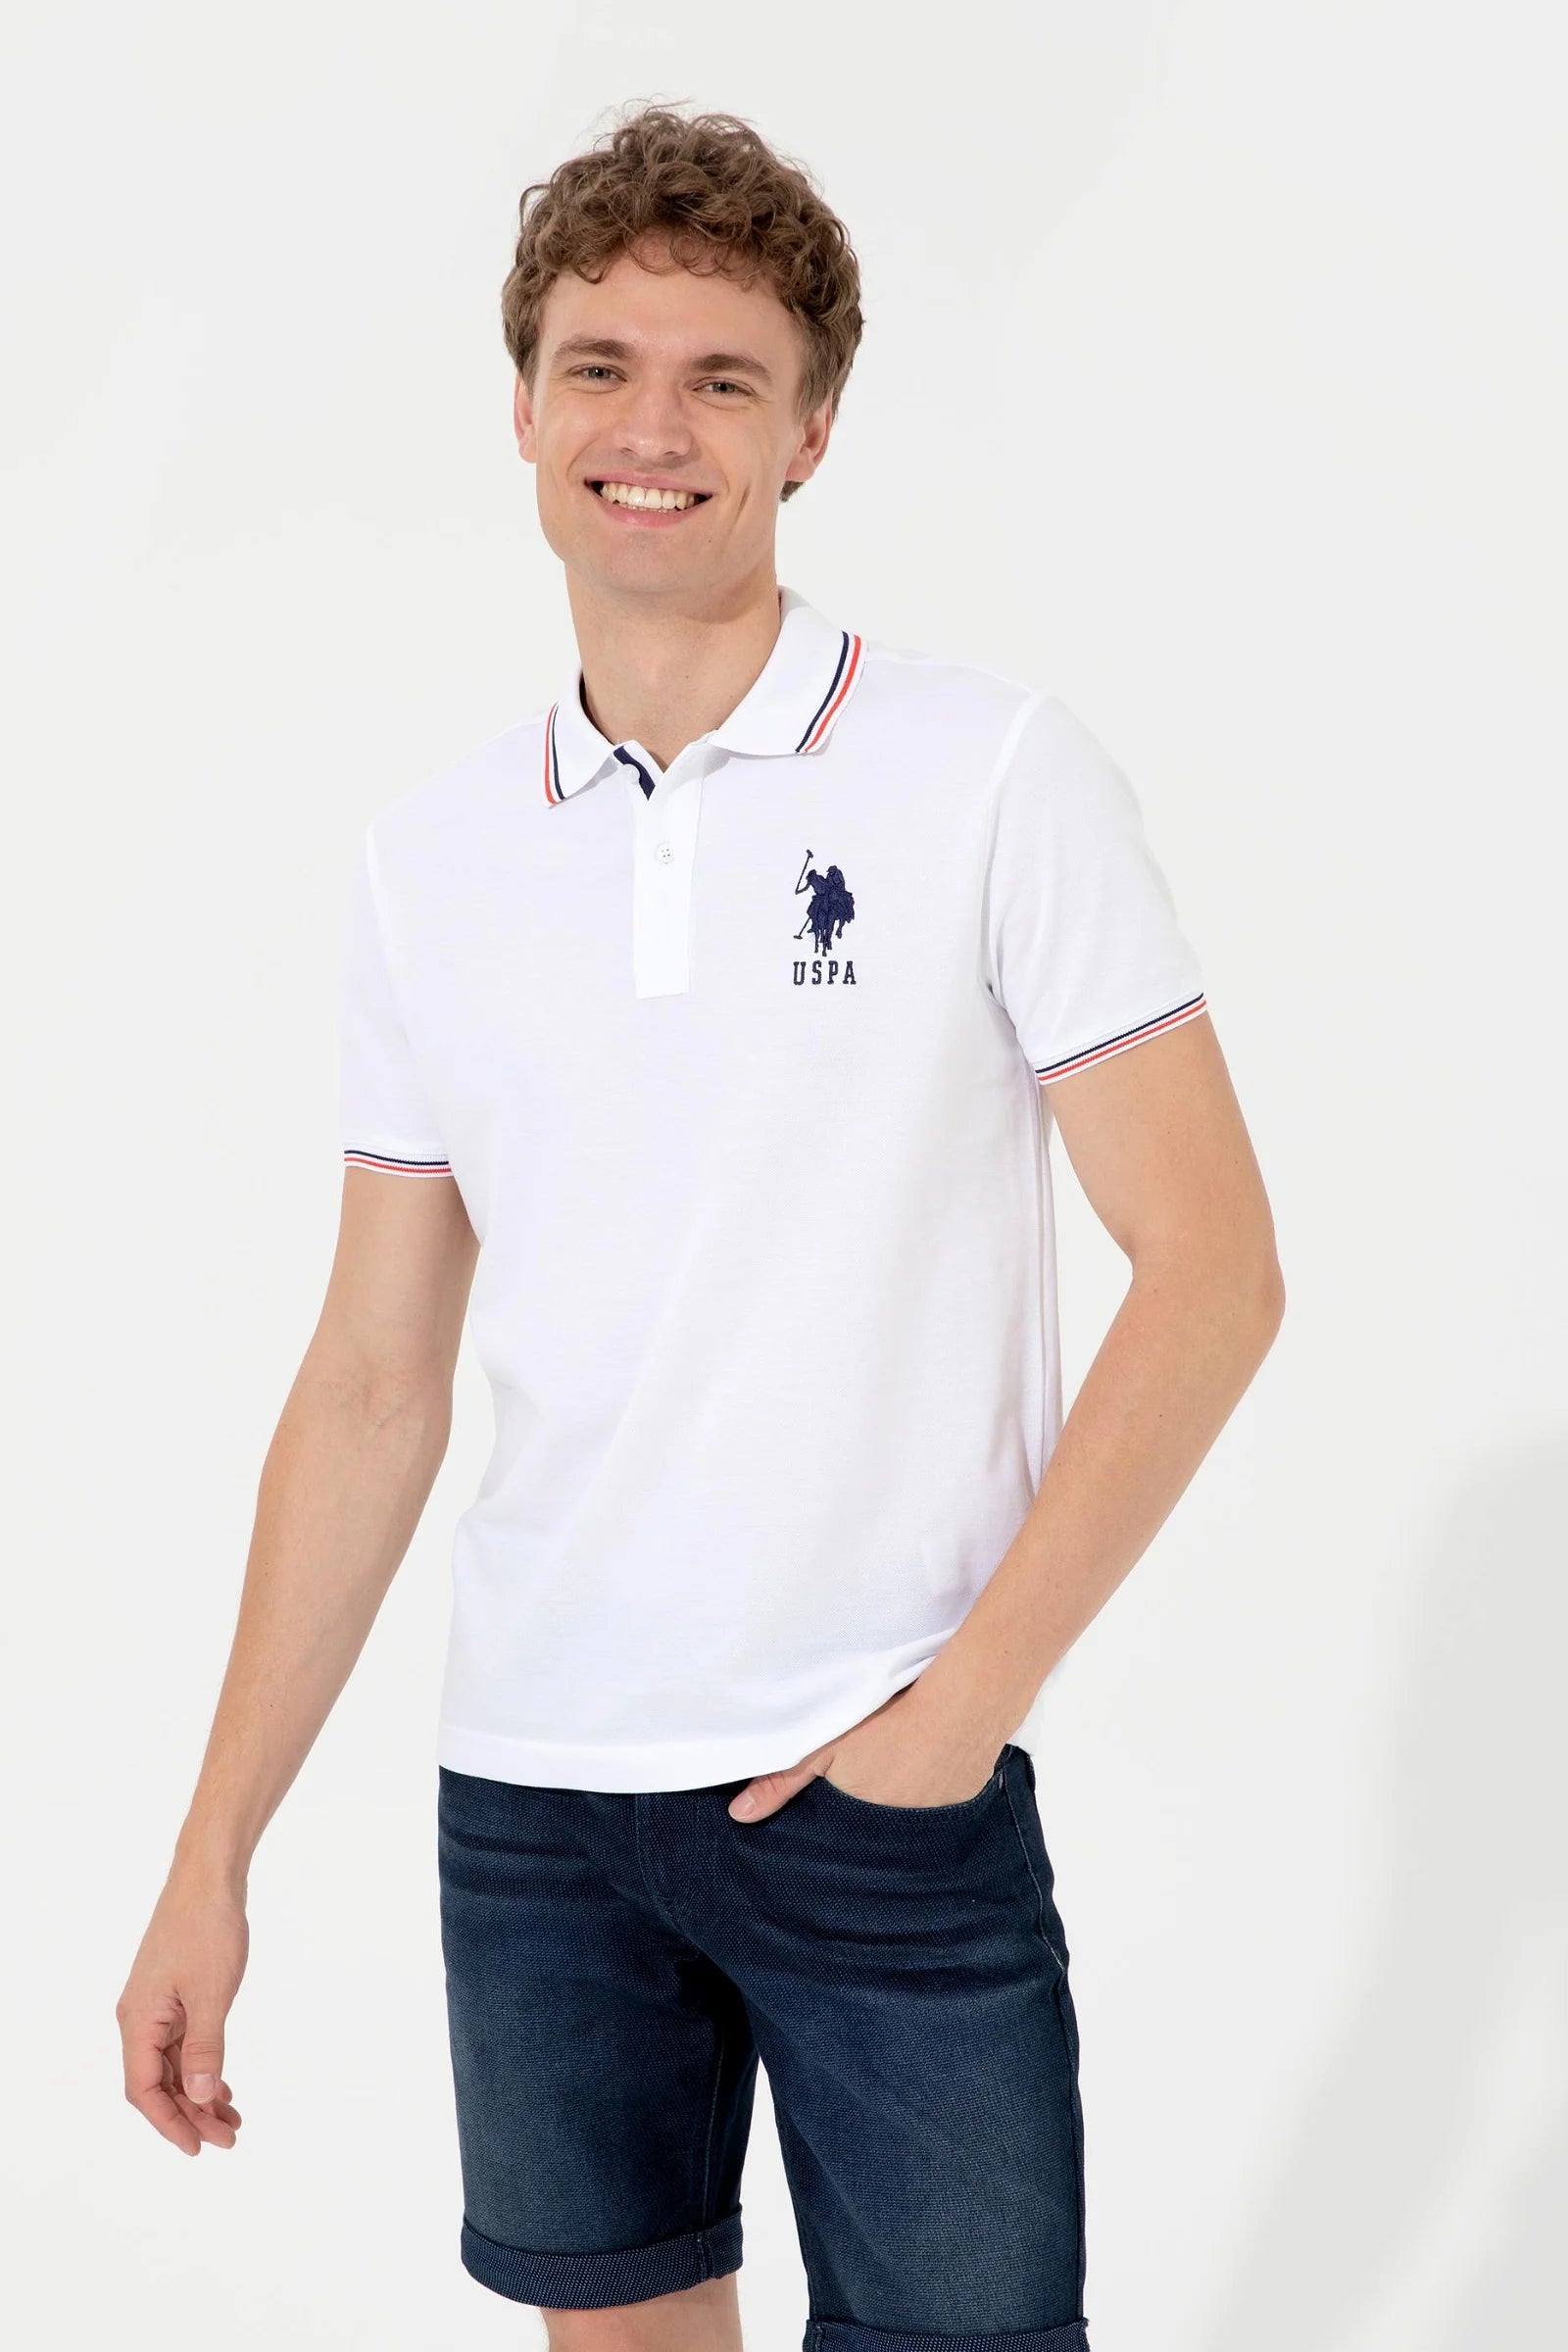 US Polo Assn. Large Logo Polo Neck T-Shirt - Men